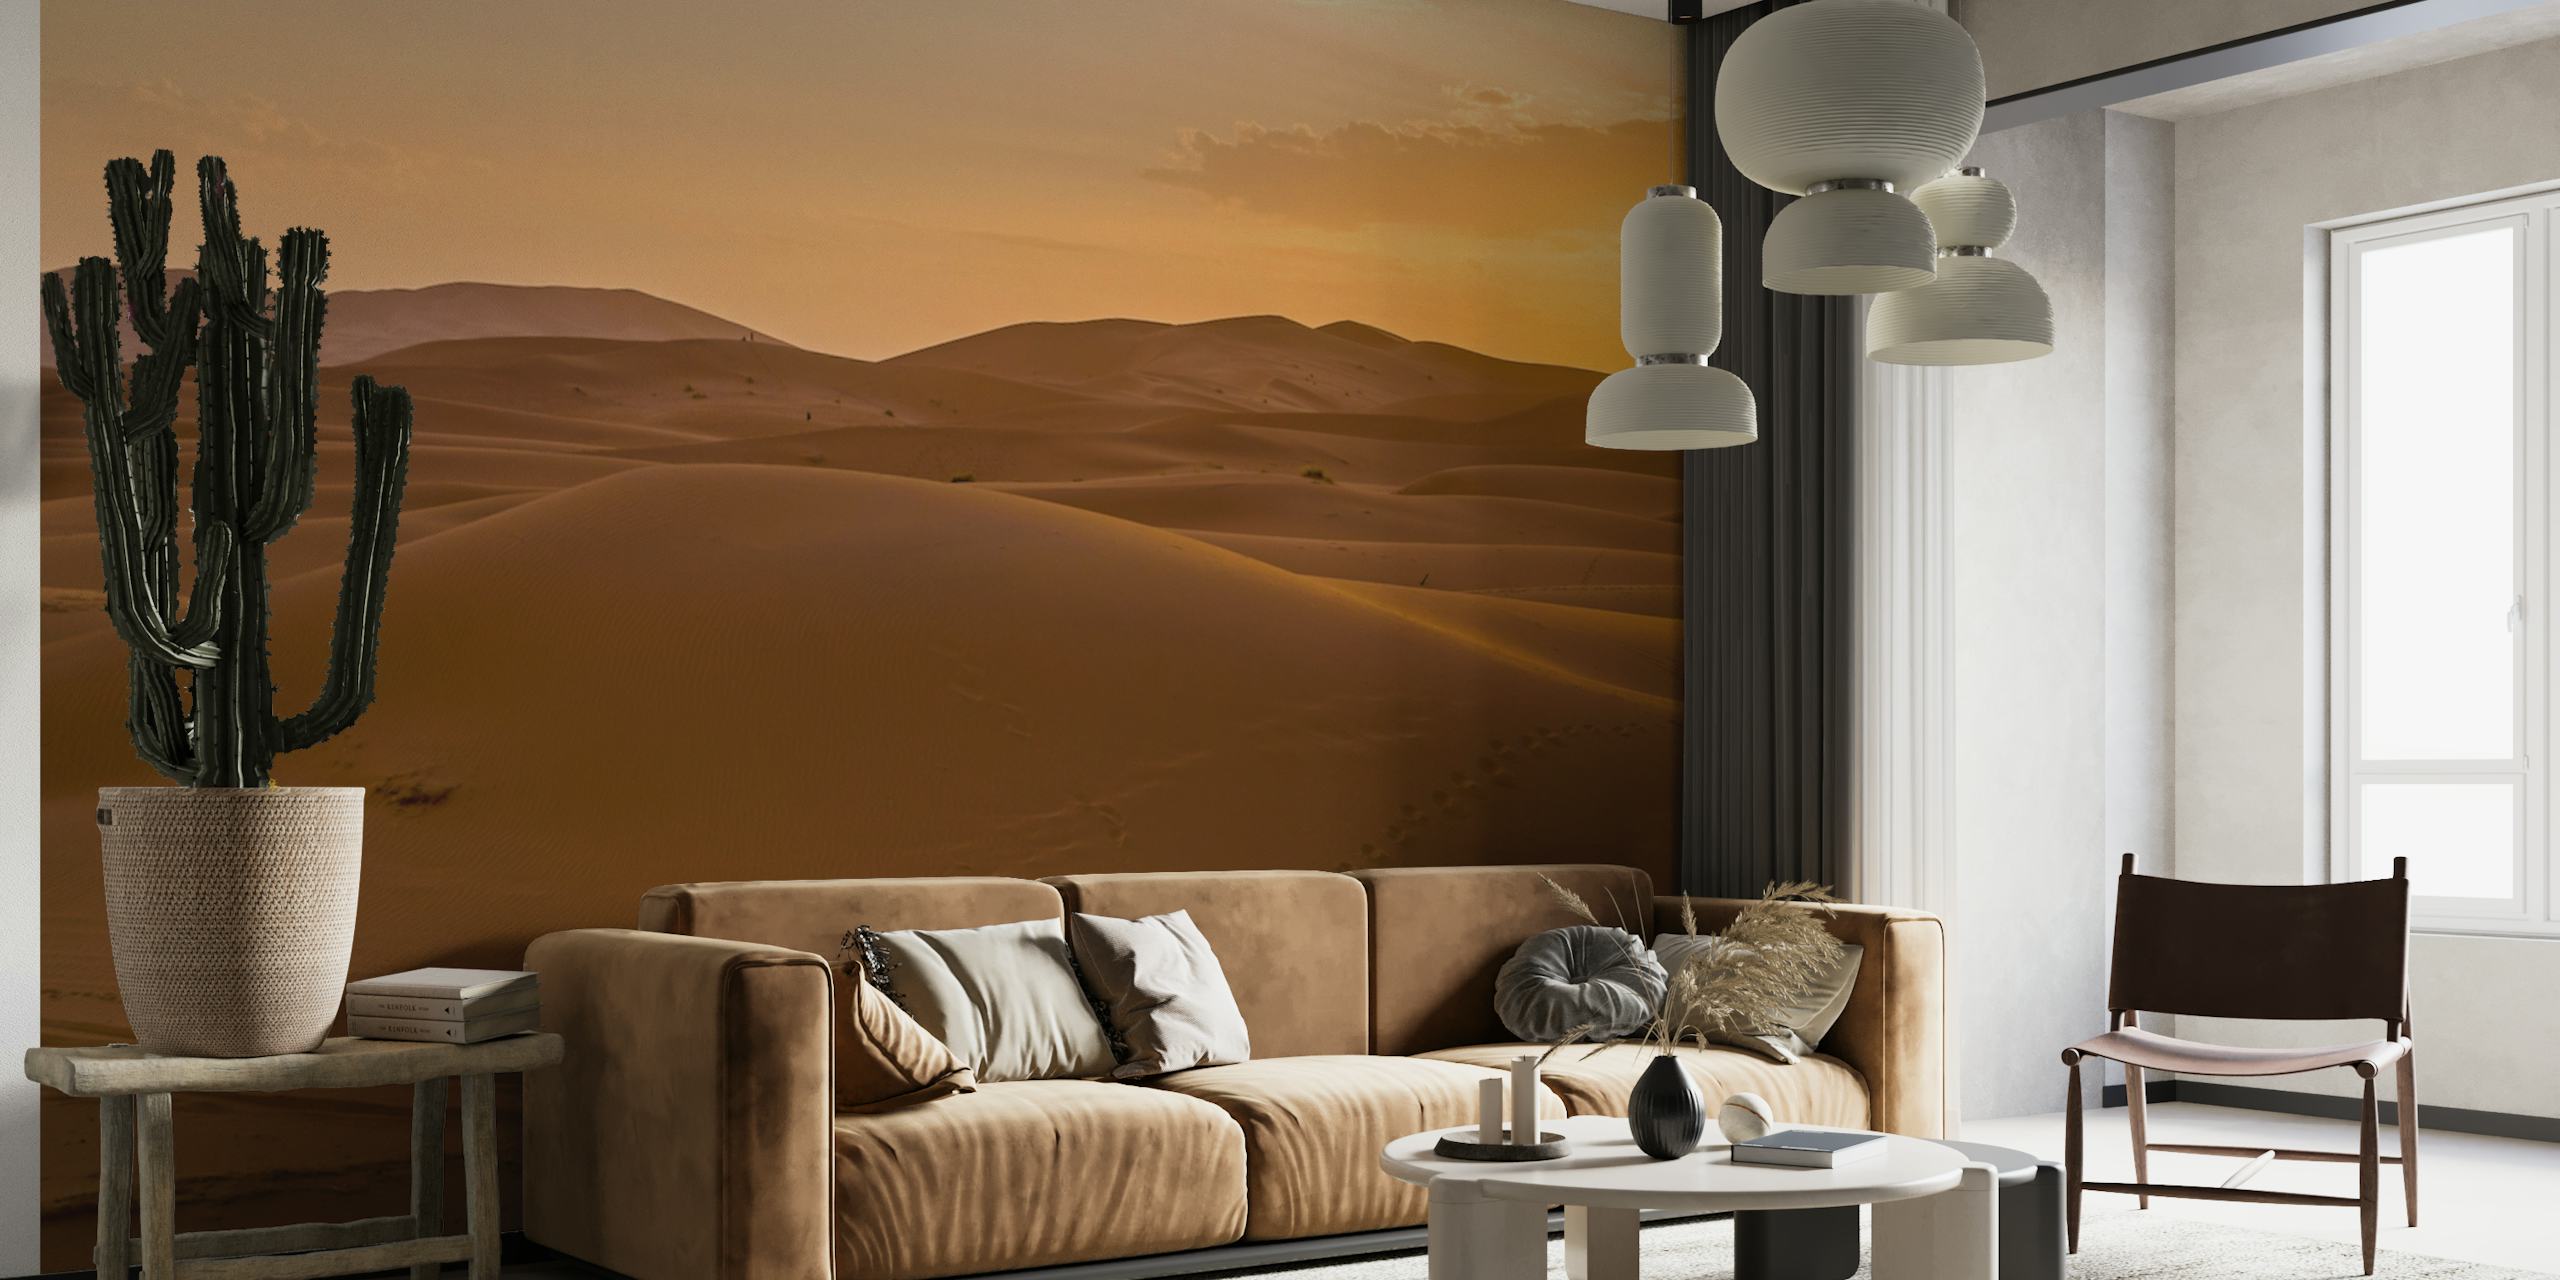 Pôr do sol dourado sobre dunas de areia em um fotomural vinílico de parede do deserto marroquino